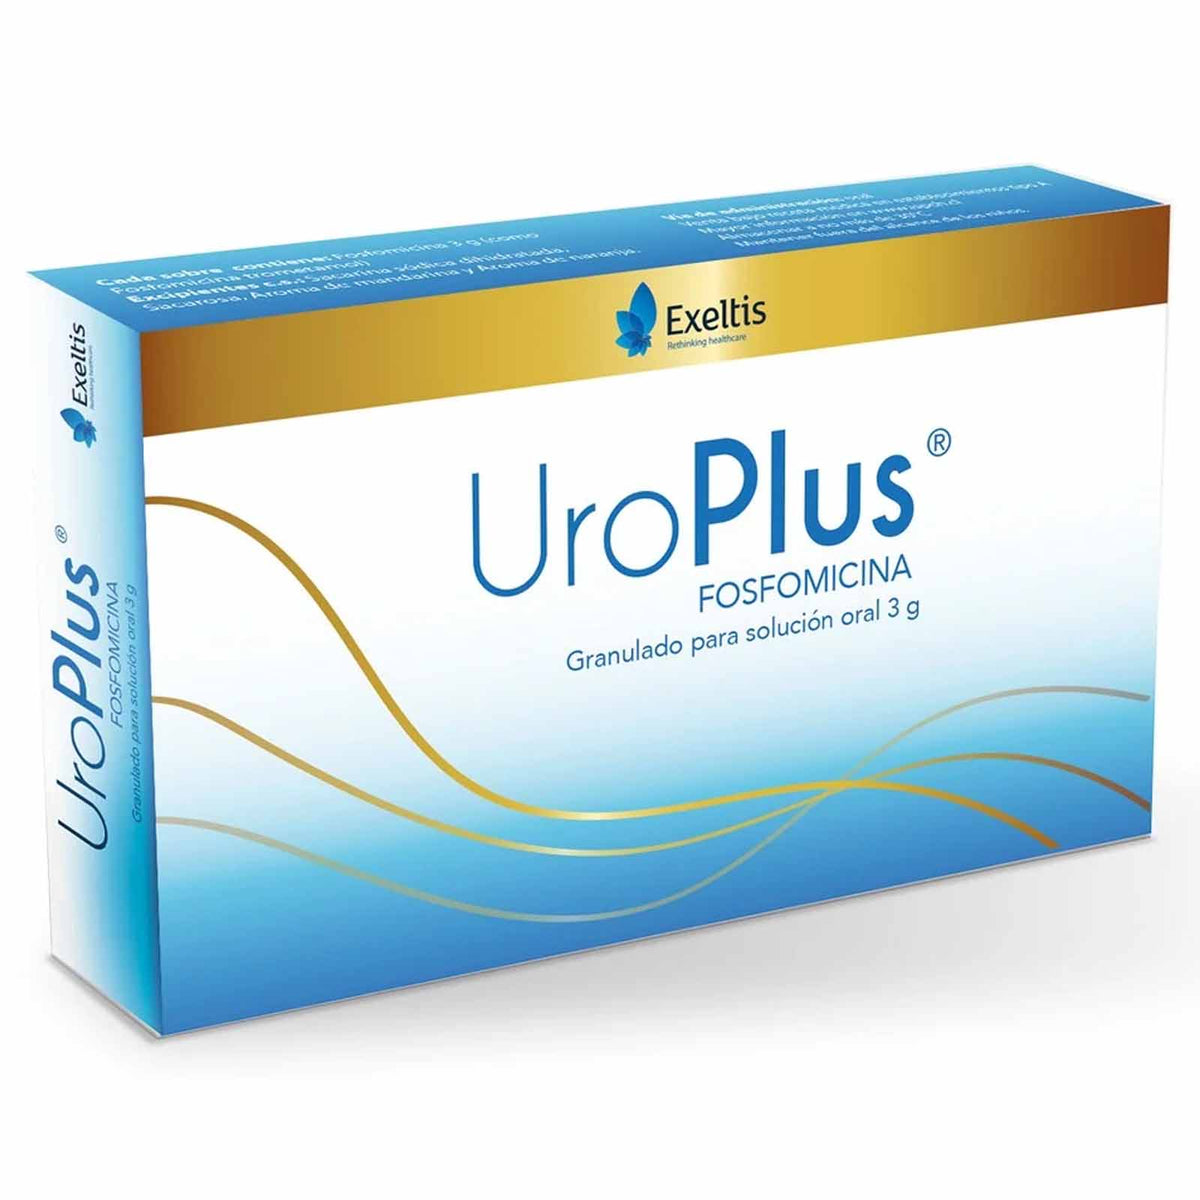 UroPlus Granulado para Solución Oral 3g